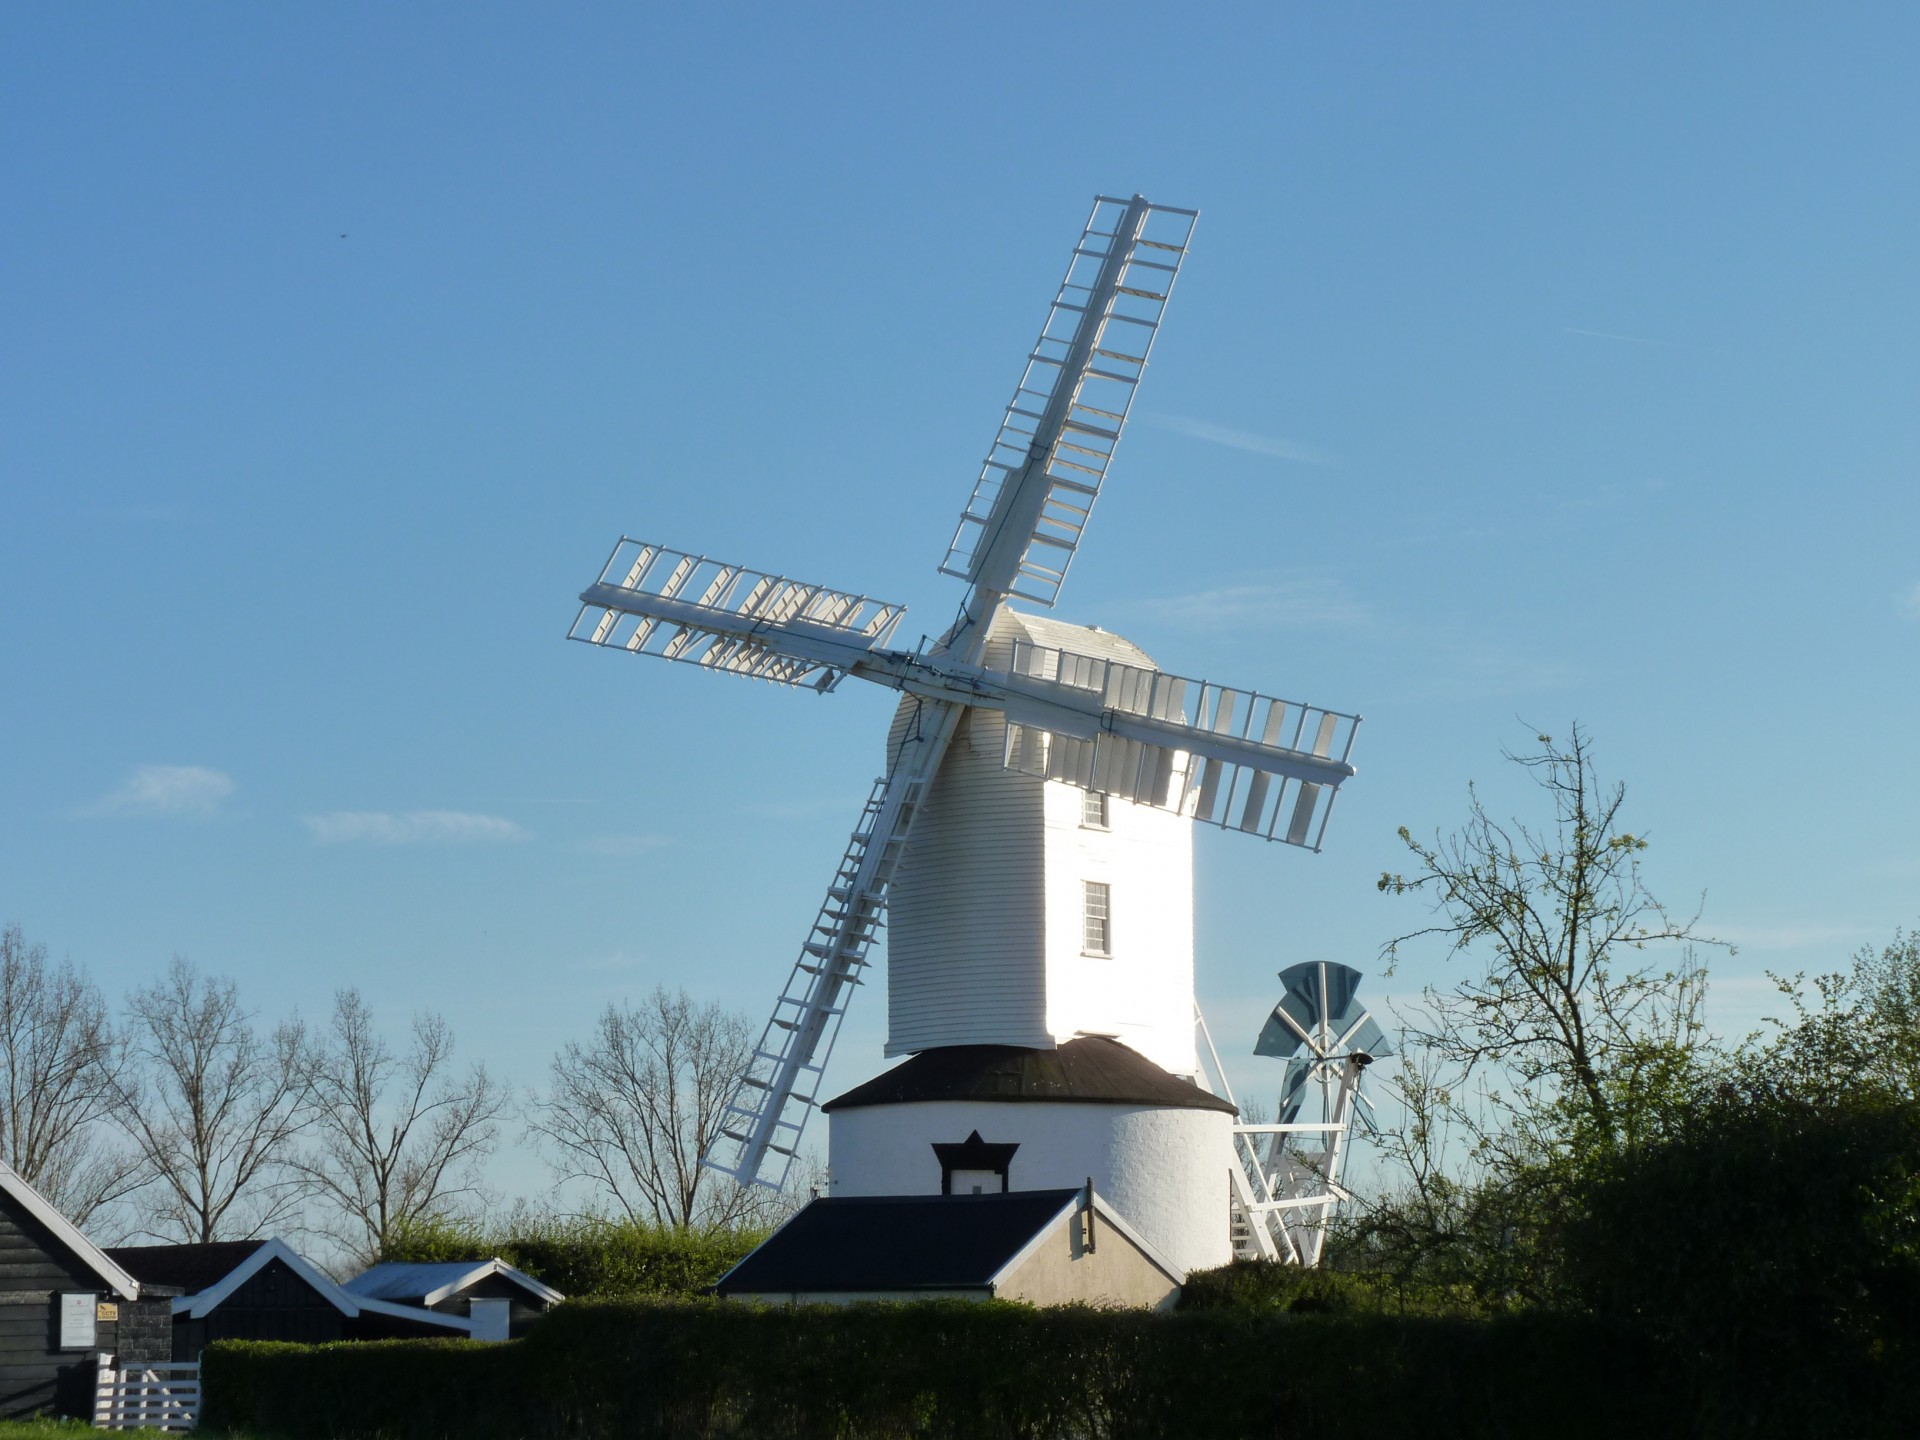 windmill post mill saxtead free photo